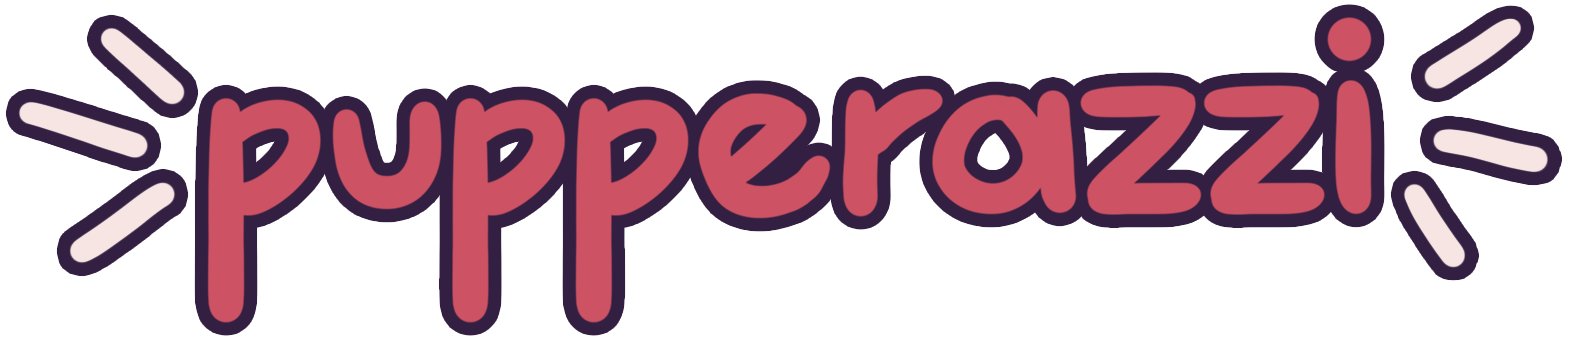 Pupperazzi logo